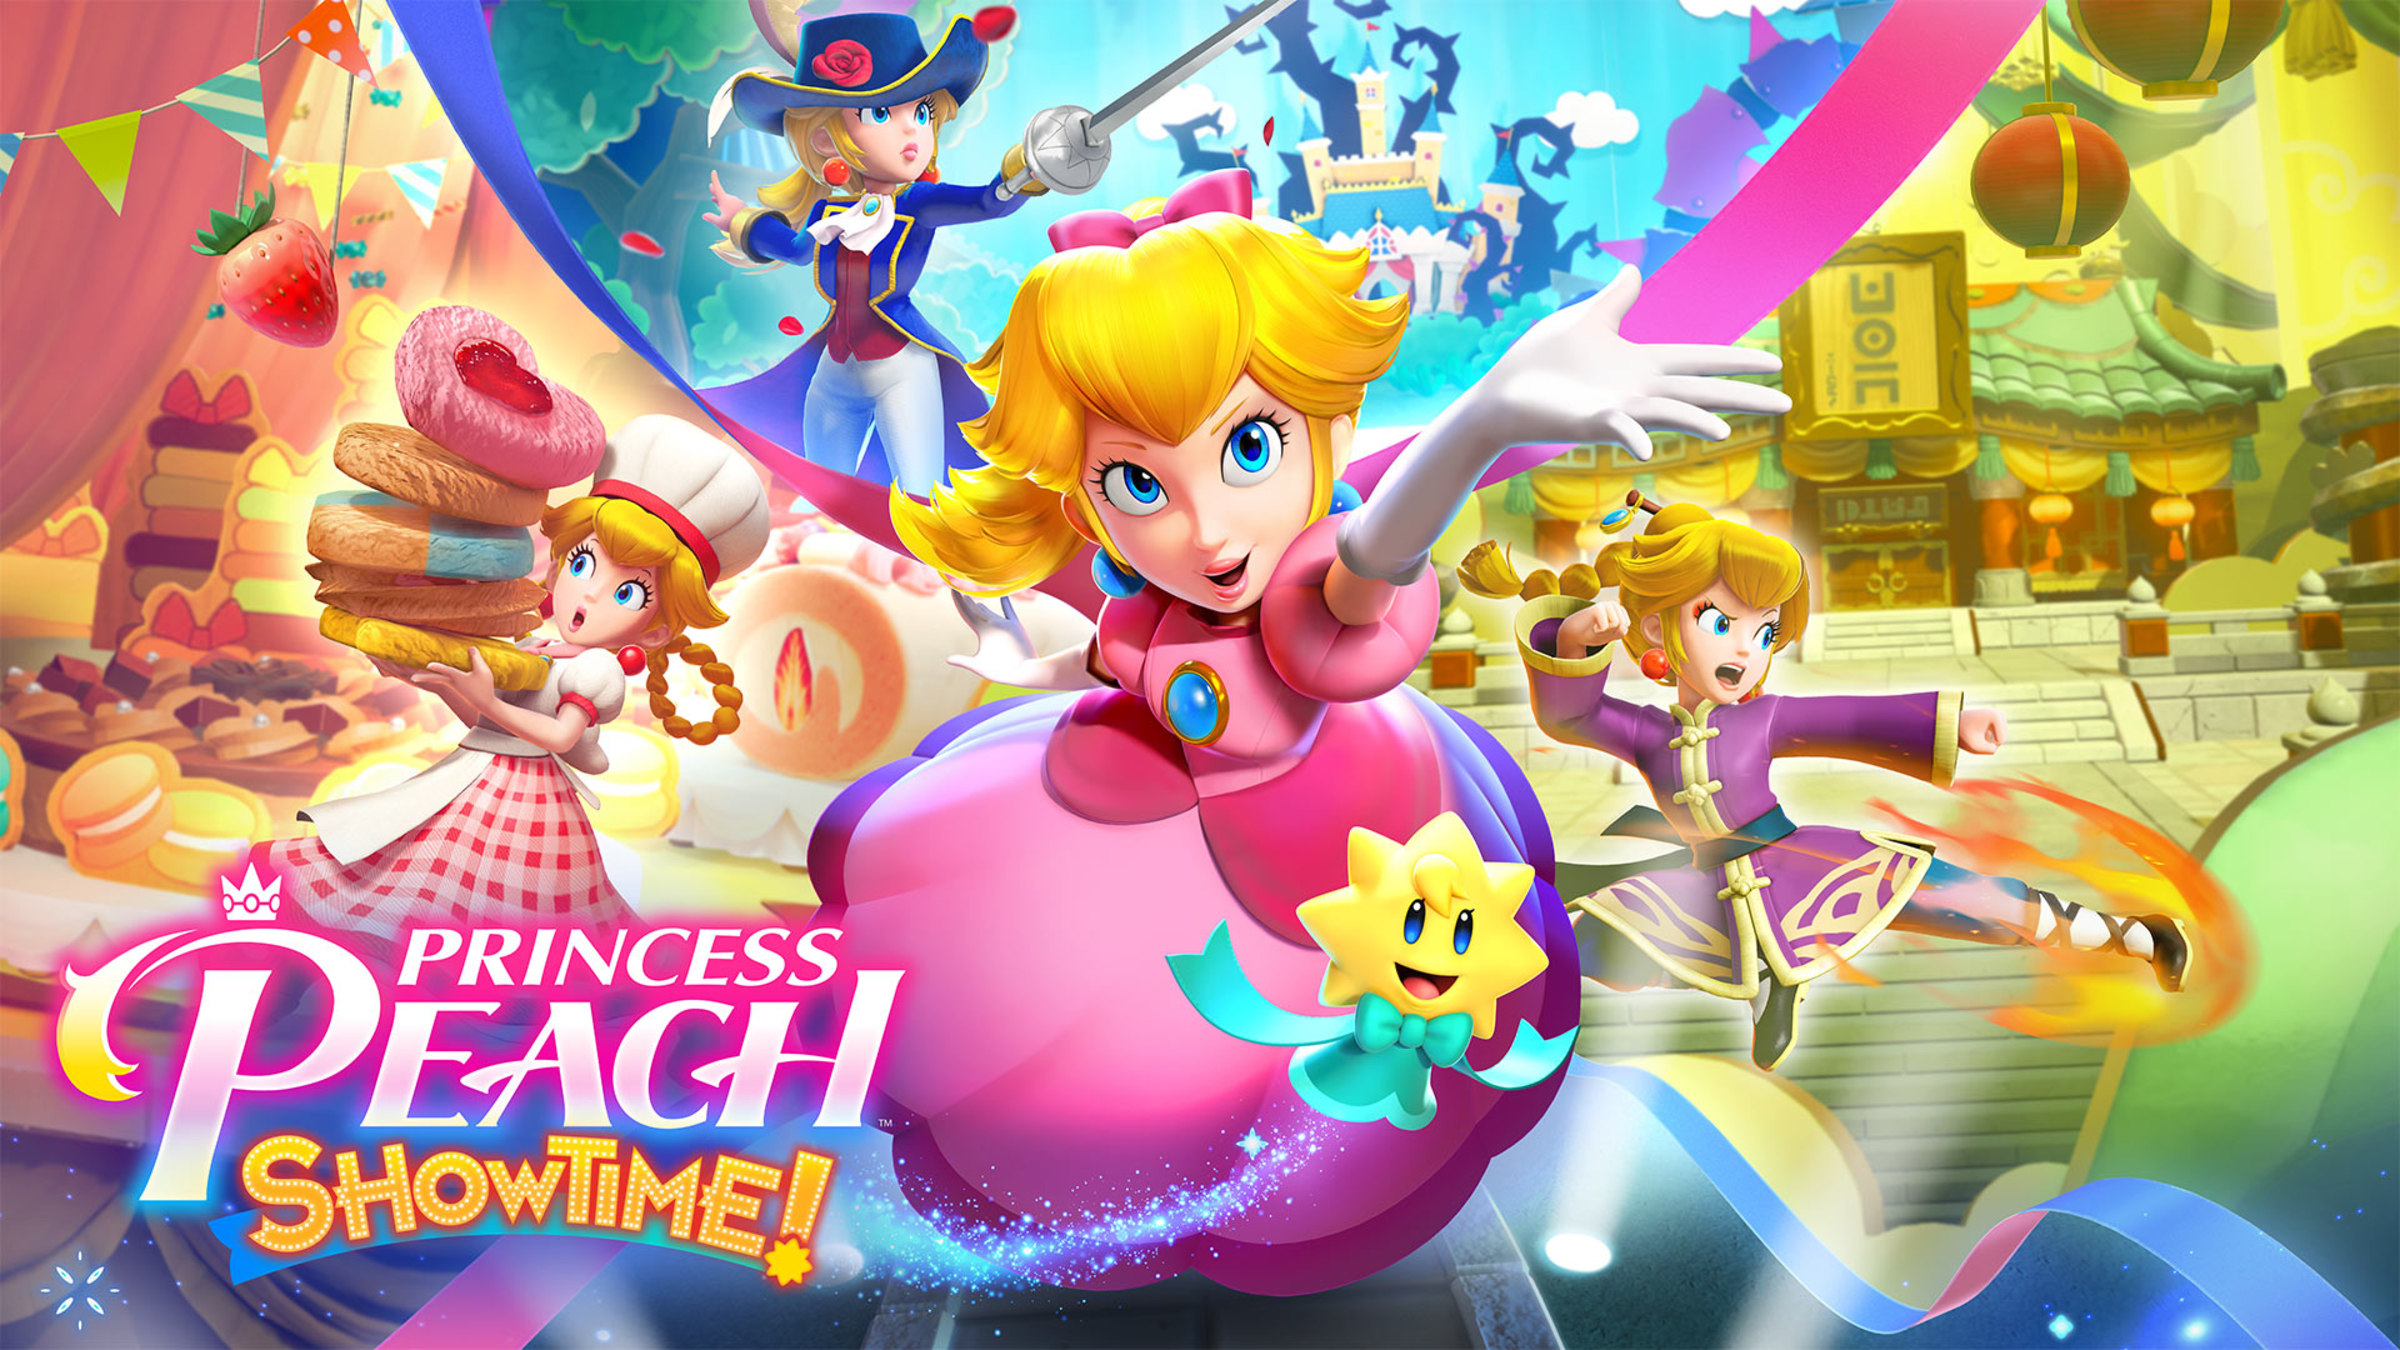 Вы сейчас просматриваете Princess Peach: Showtime! получила возрастной рейтинг ESRB "E10+" в преддверии мартовского релиза